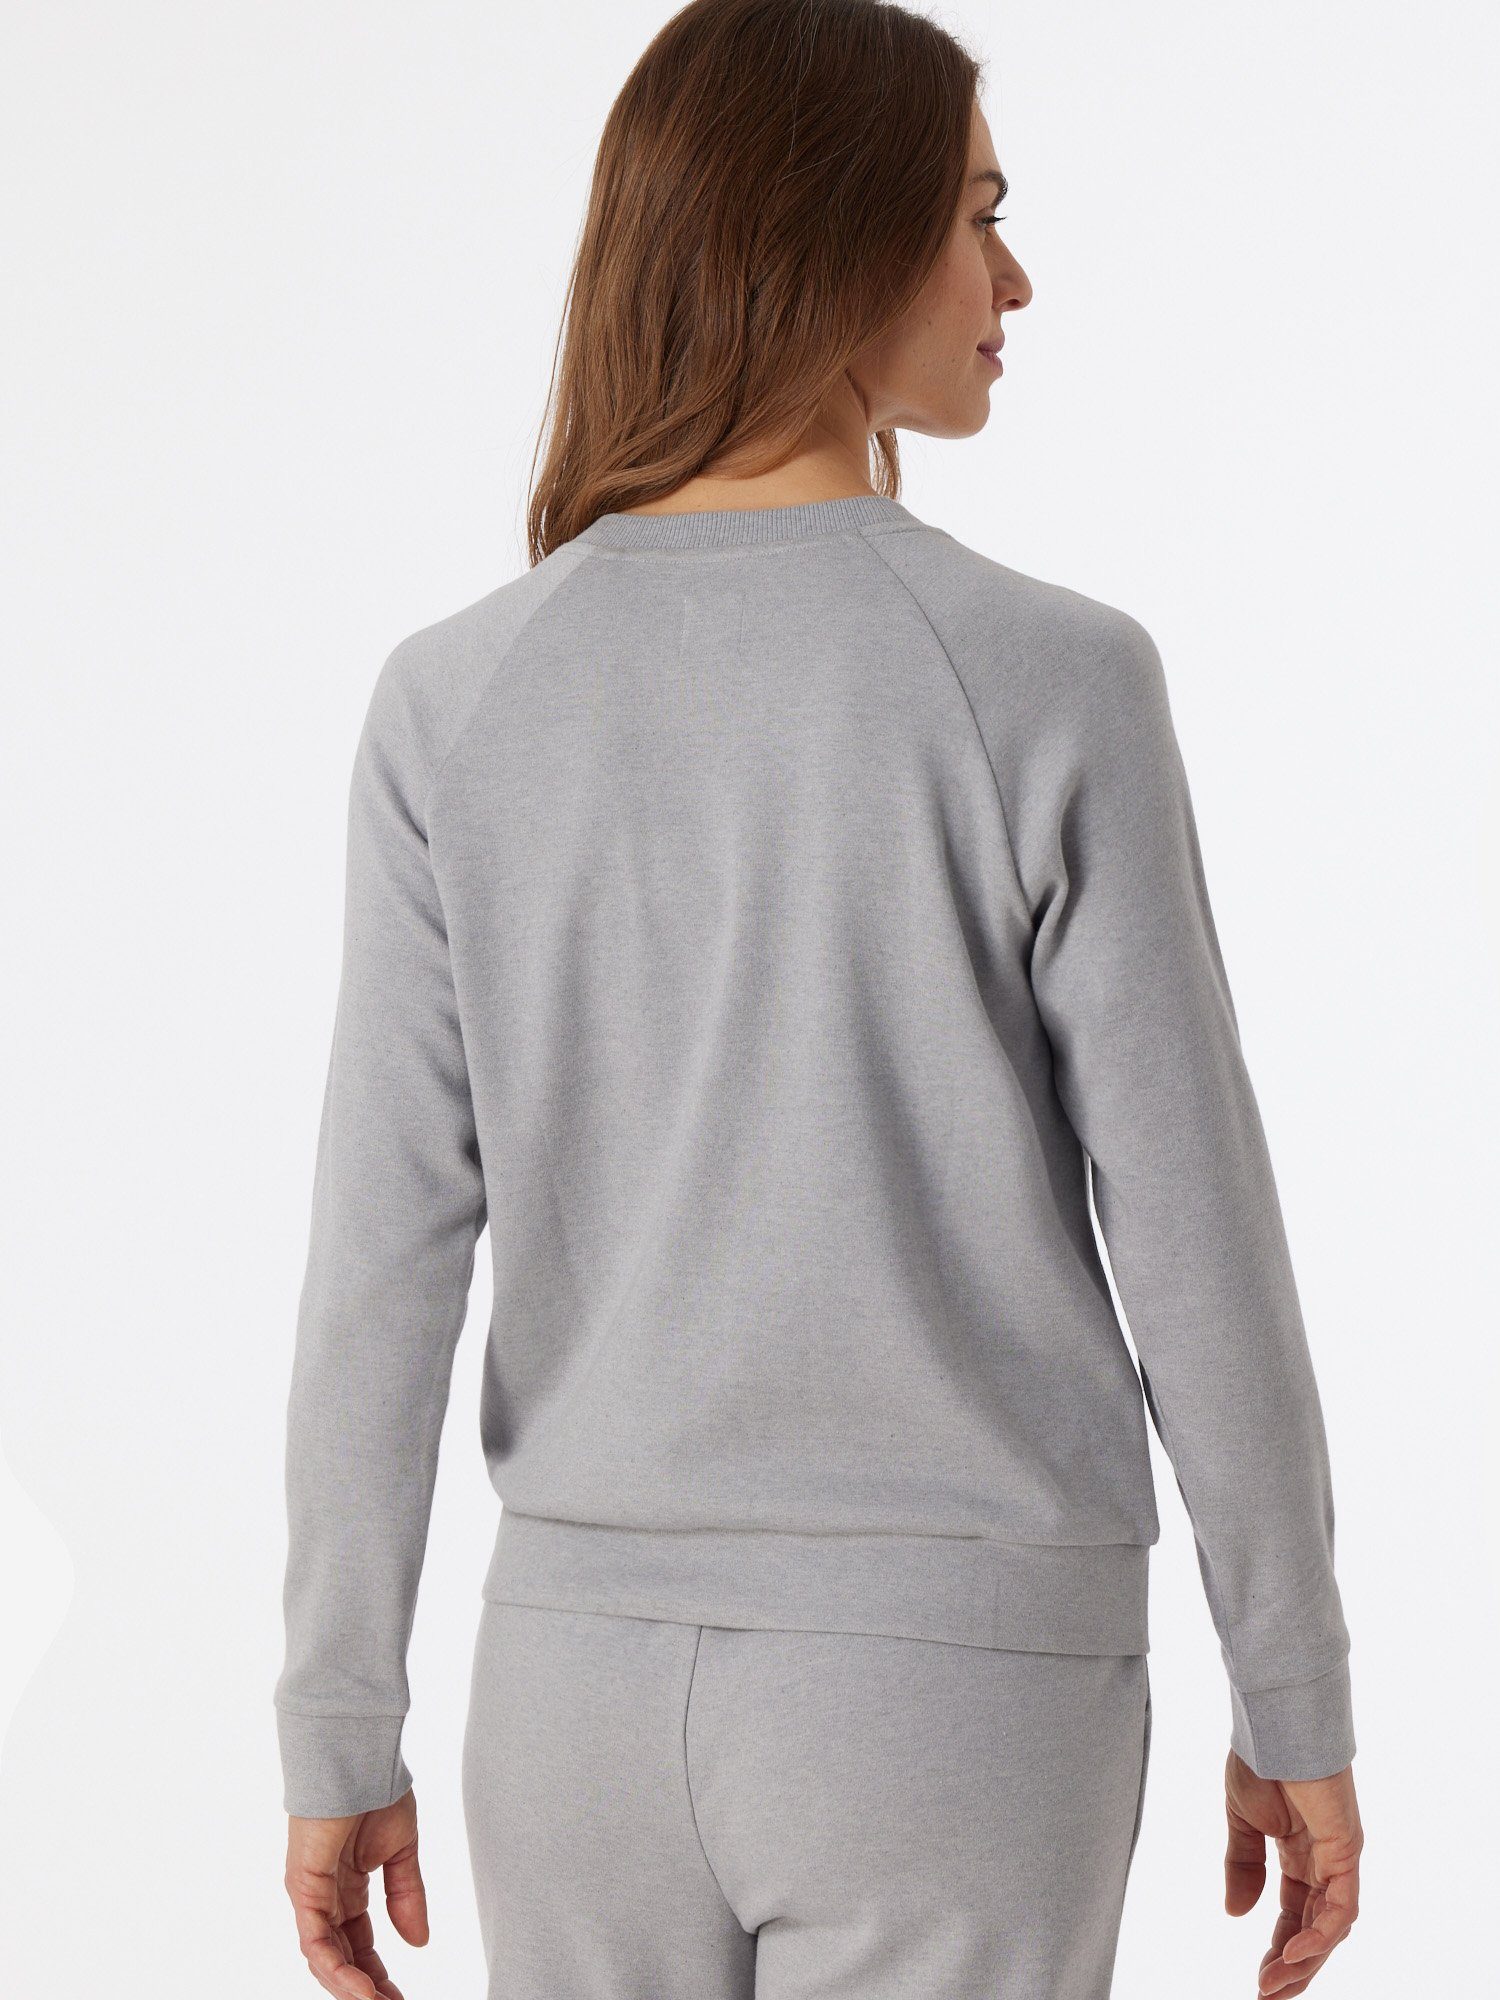 pullover & Schiesser grau-mel. Sweatshirt Sweatshirt Mix Relax pulli